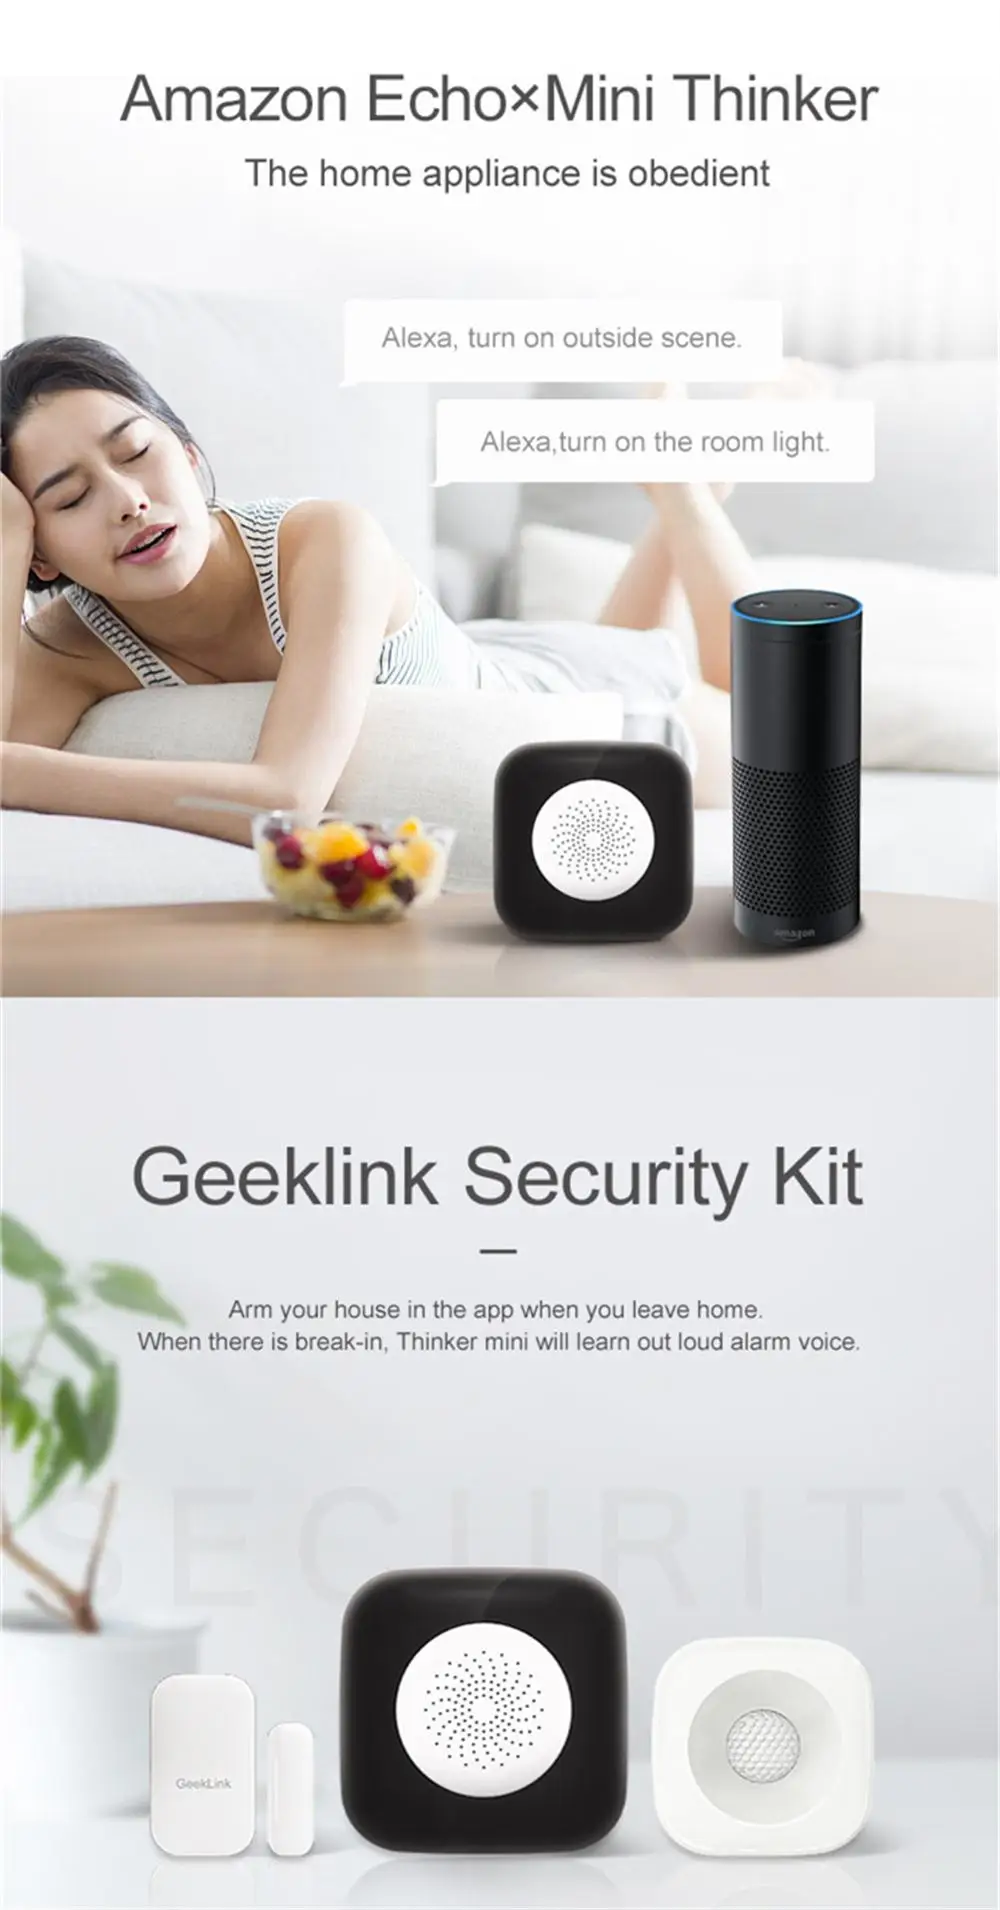 Geeklink умный дом Мини WiFi+ IR+ RF приложение пульт дистанционного управления Лер AC tv Сири, голосовой контроль для Amazon Alexa Google Home стандарт США ЕС